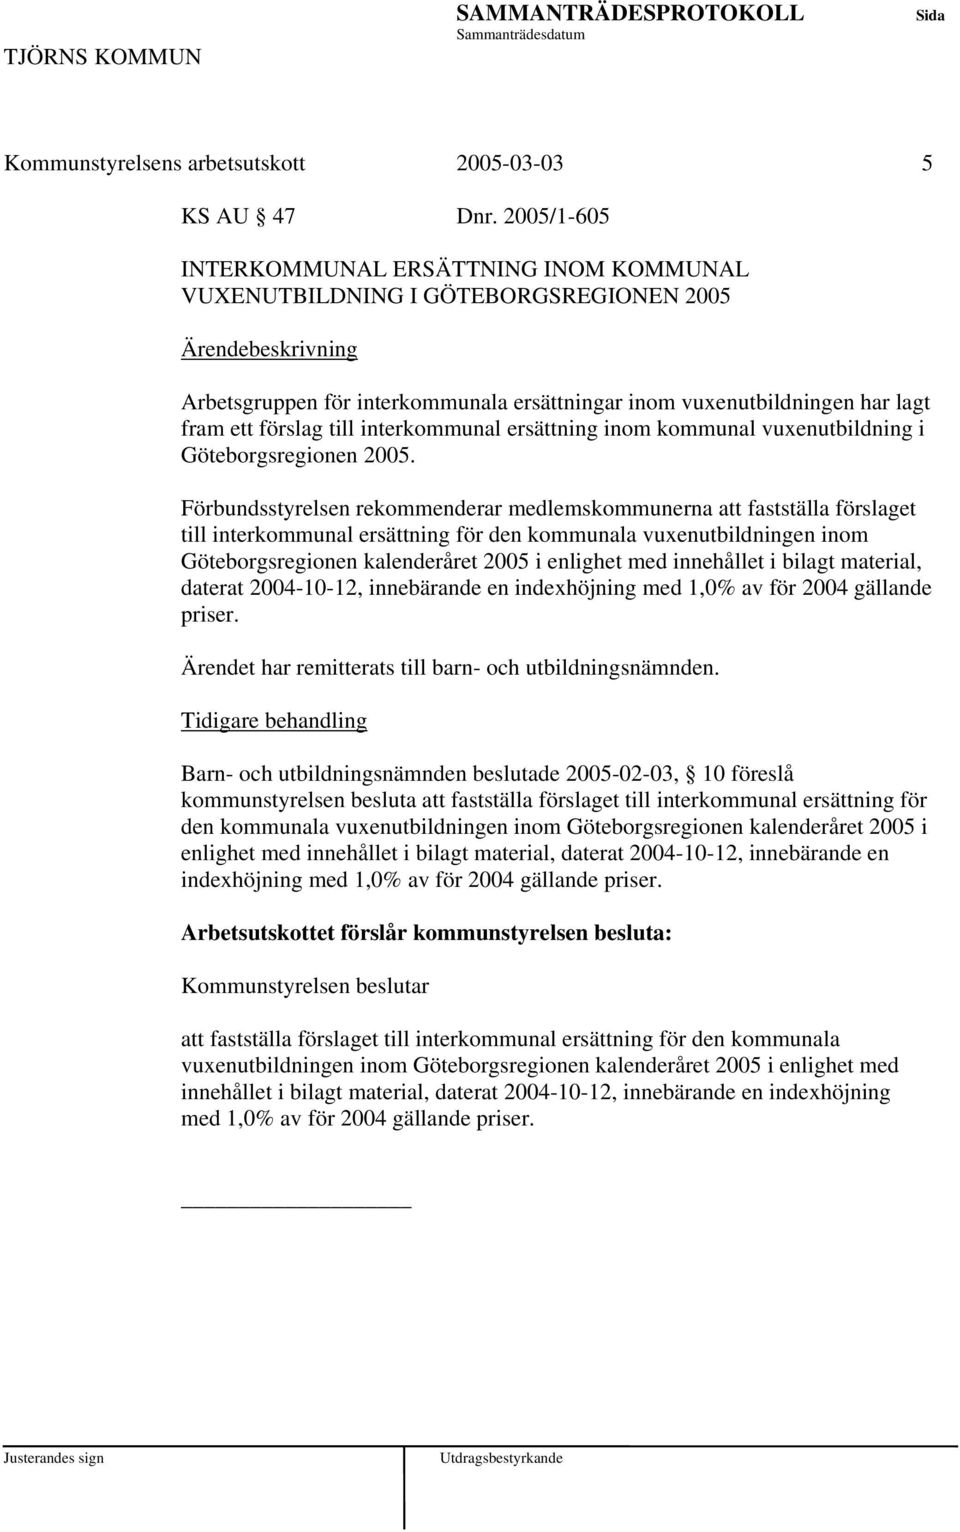 interkommunal ersättning inom kommunal vuxenutbildning i Göteborgsregionen 2005.